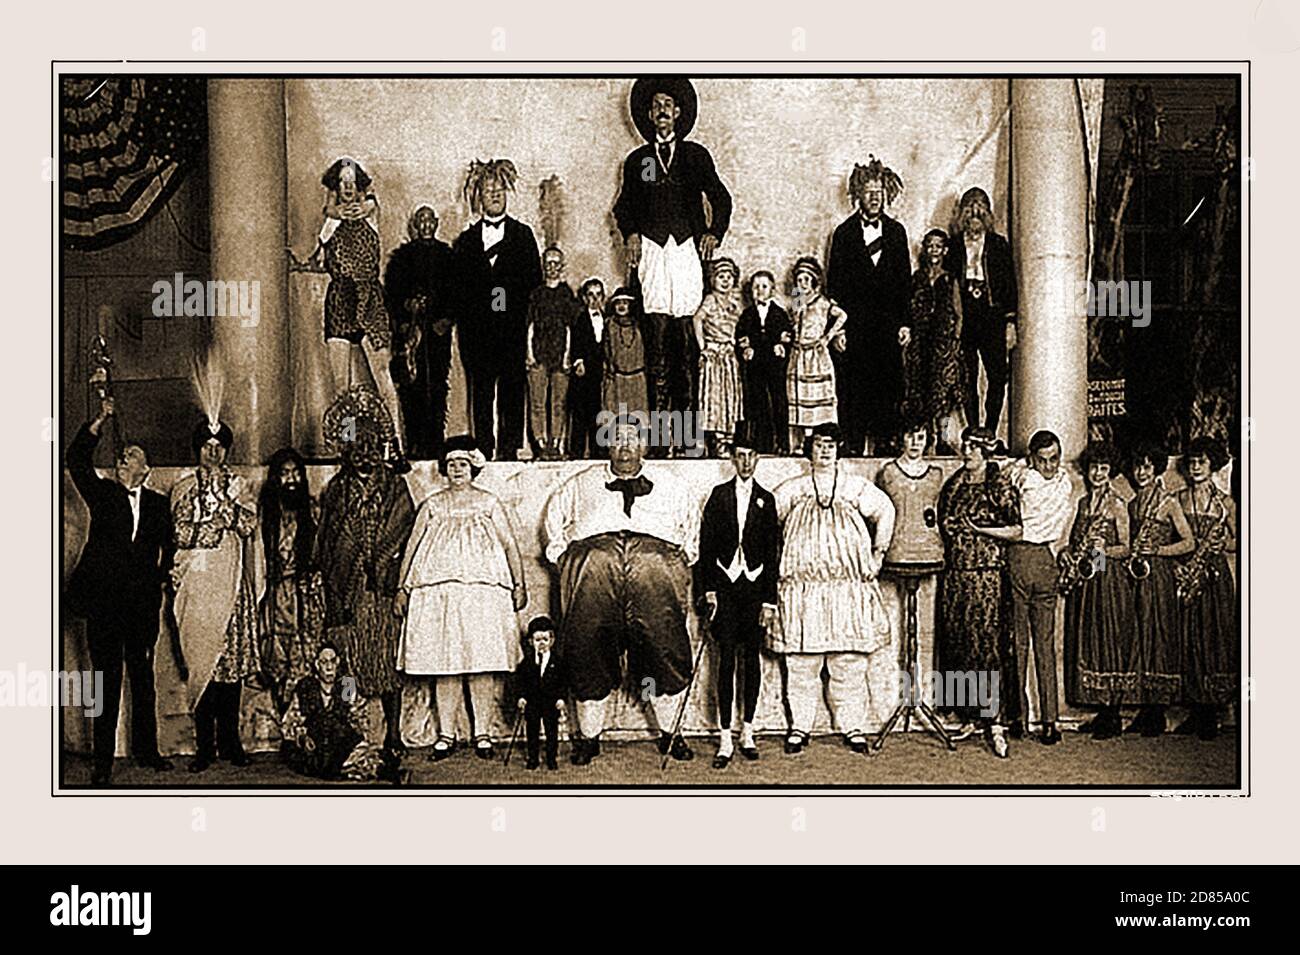 Une carte de présentation promotionnelle des années 1920 (publicité par carte photo) faisant la publicité d'un « congrès des freaks des Ringling Brothers & Barnum & Bailey's cirques ». Banque D'Images